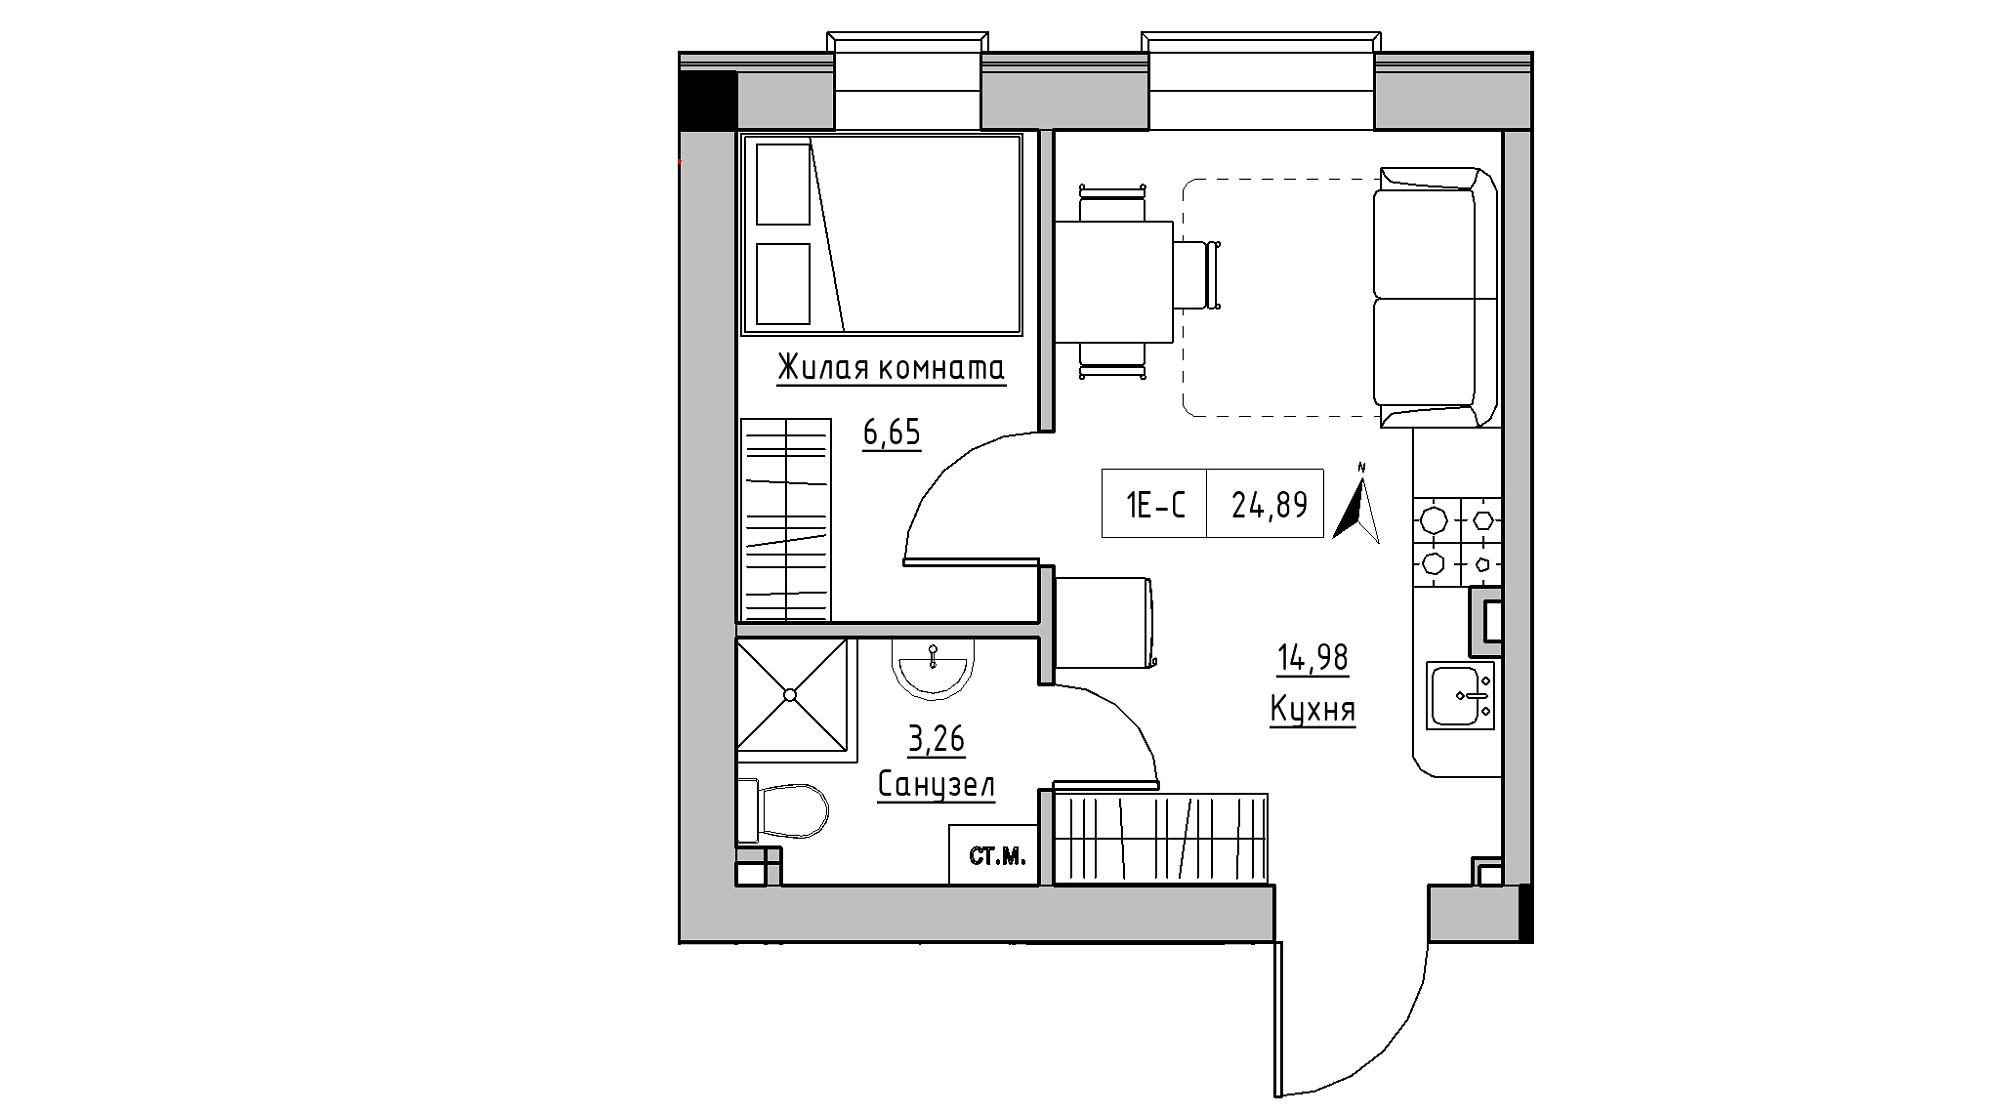 Планування 1-к квартира площею 24.98м2, KS-014-01/0004.